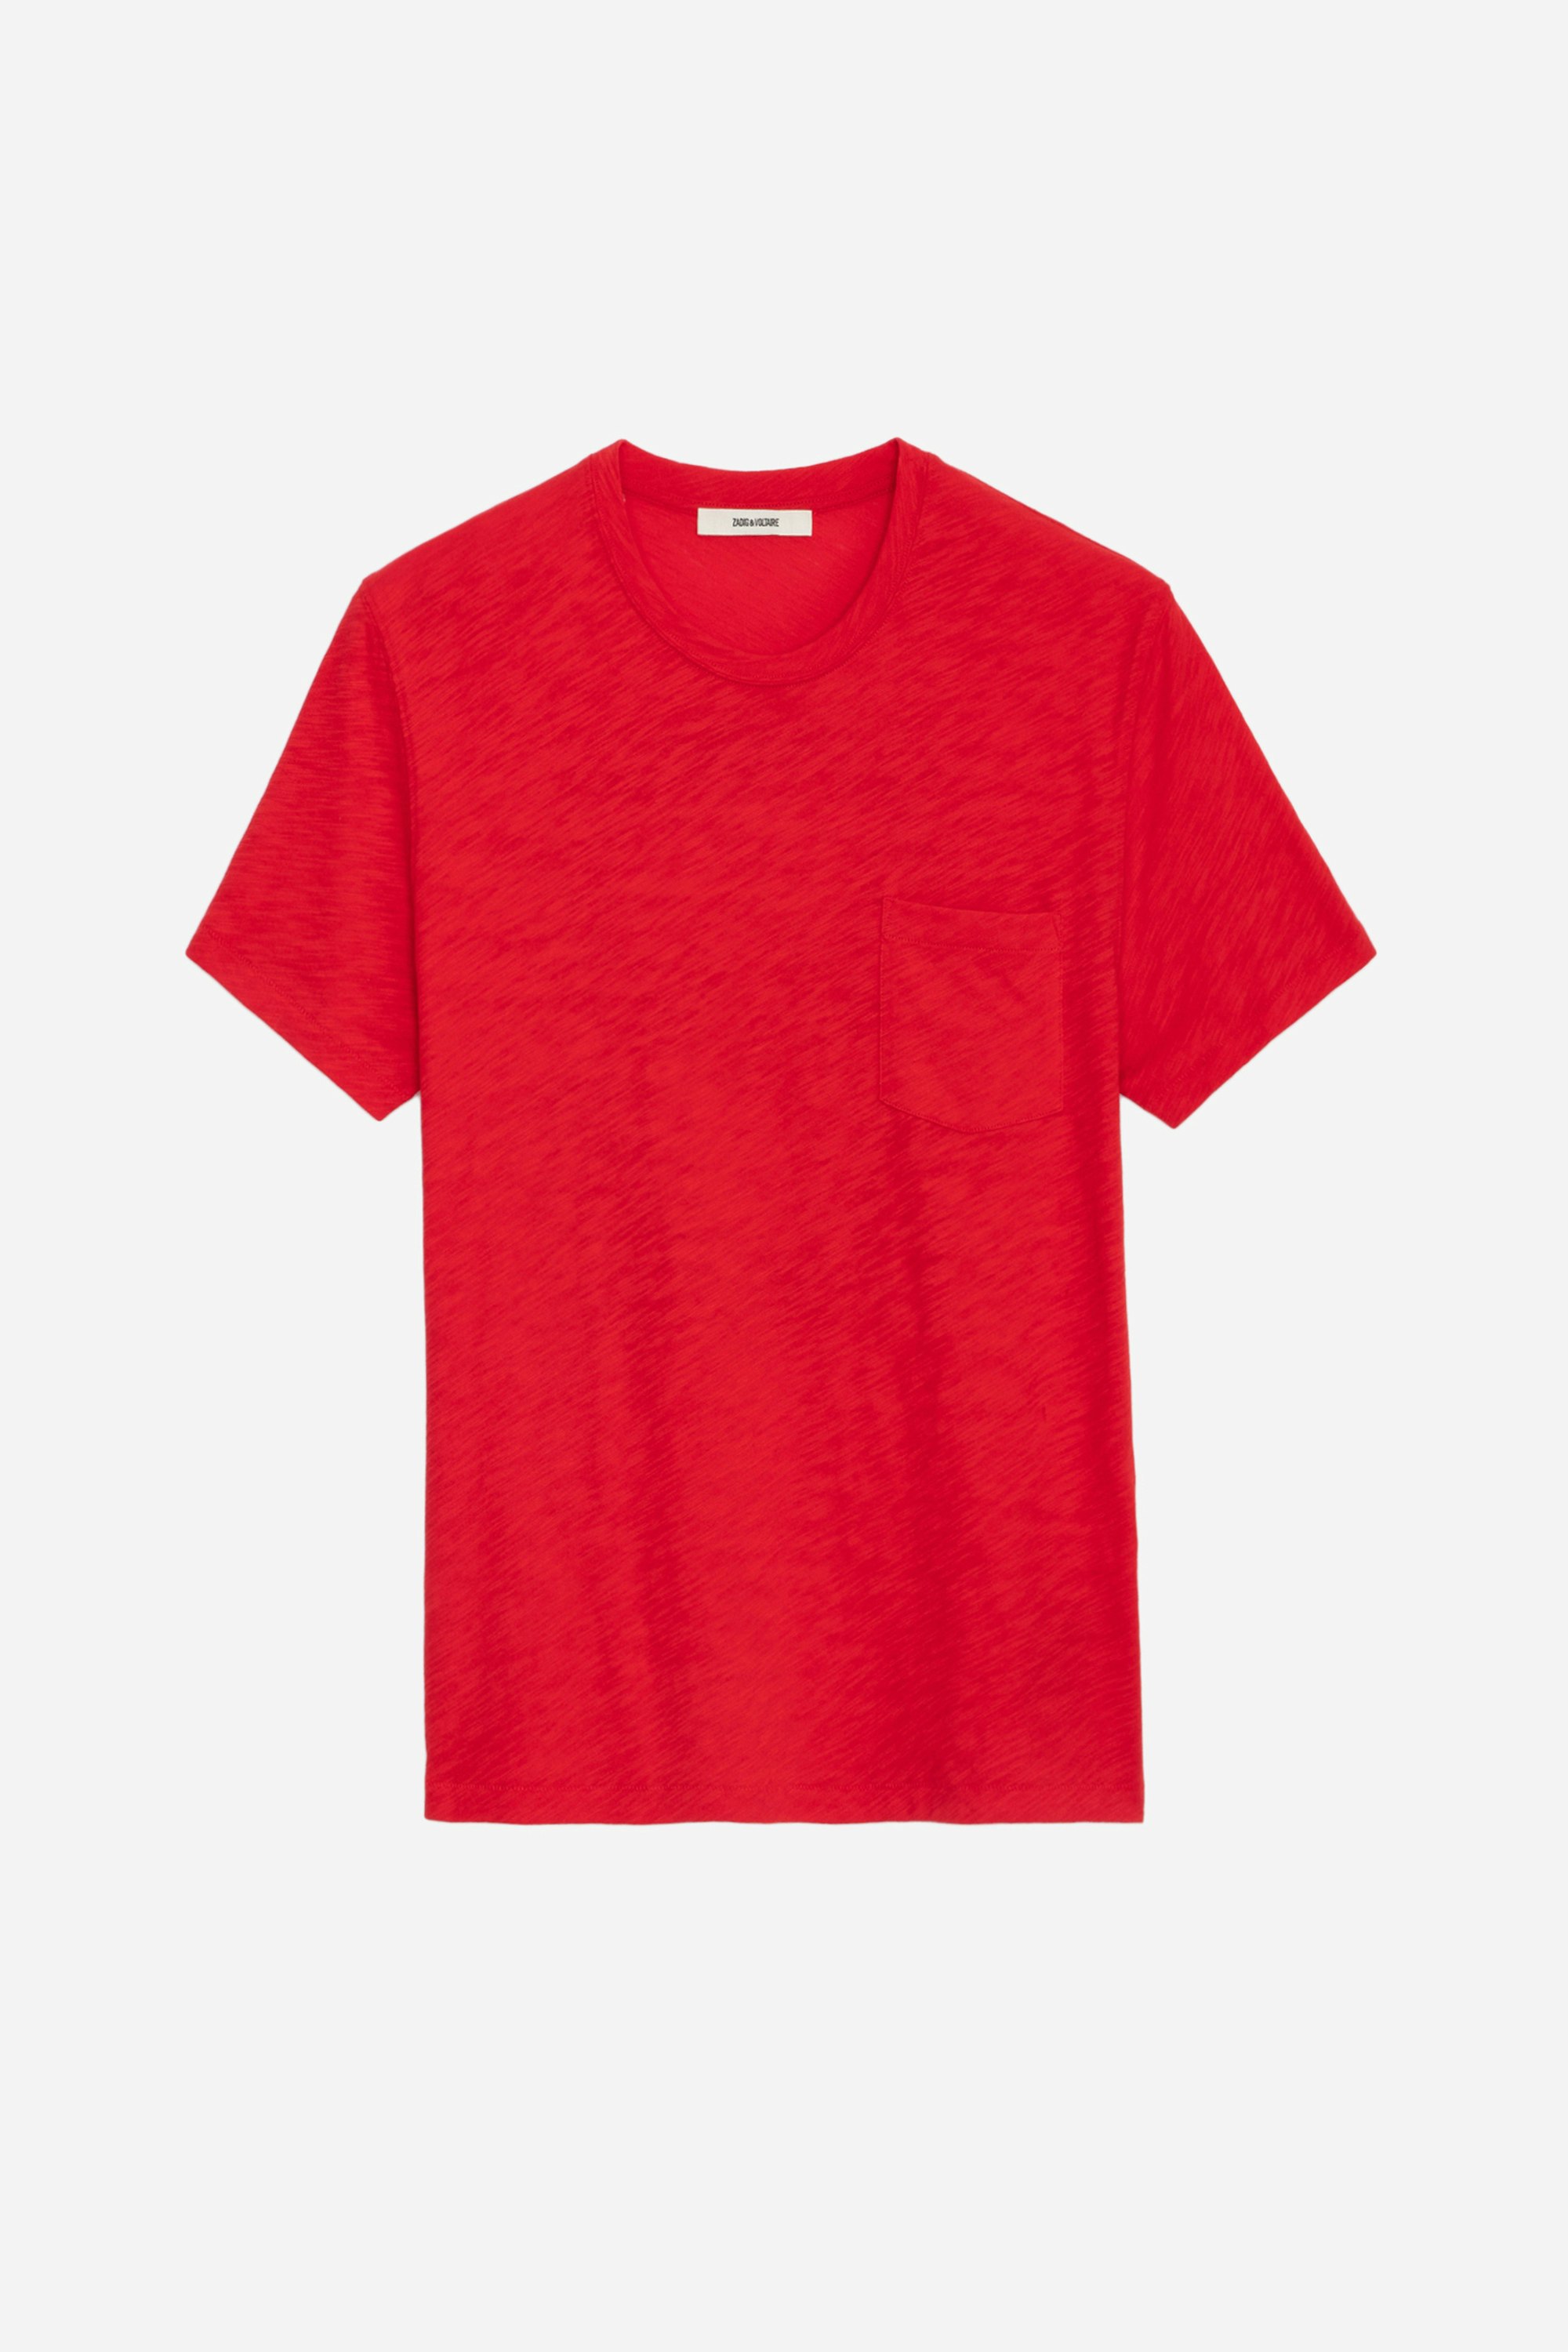 T-shirt Stockholm fiammato - T-shirt in cotone fiammato rossa con tasca sul petto e motivo Skull sul retro da uomo.